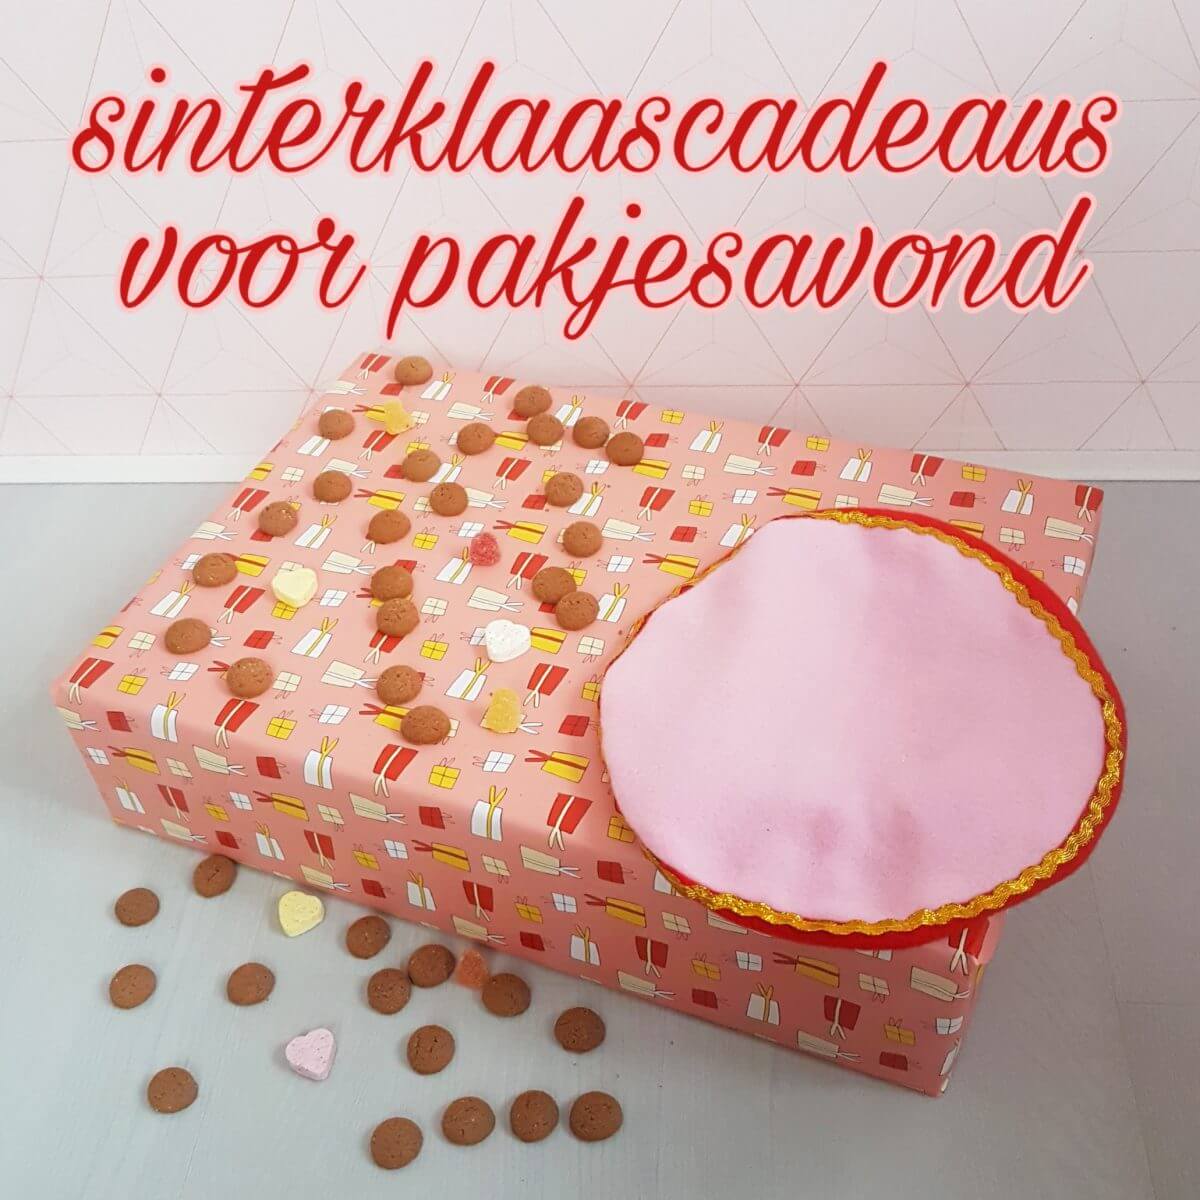 rechtbank Waarnemen lichtgewicht Sinterklaascadeaus pakjesavond: de leukste cadeau ideeën voor de Sint Leuk  met kids